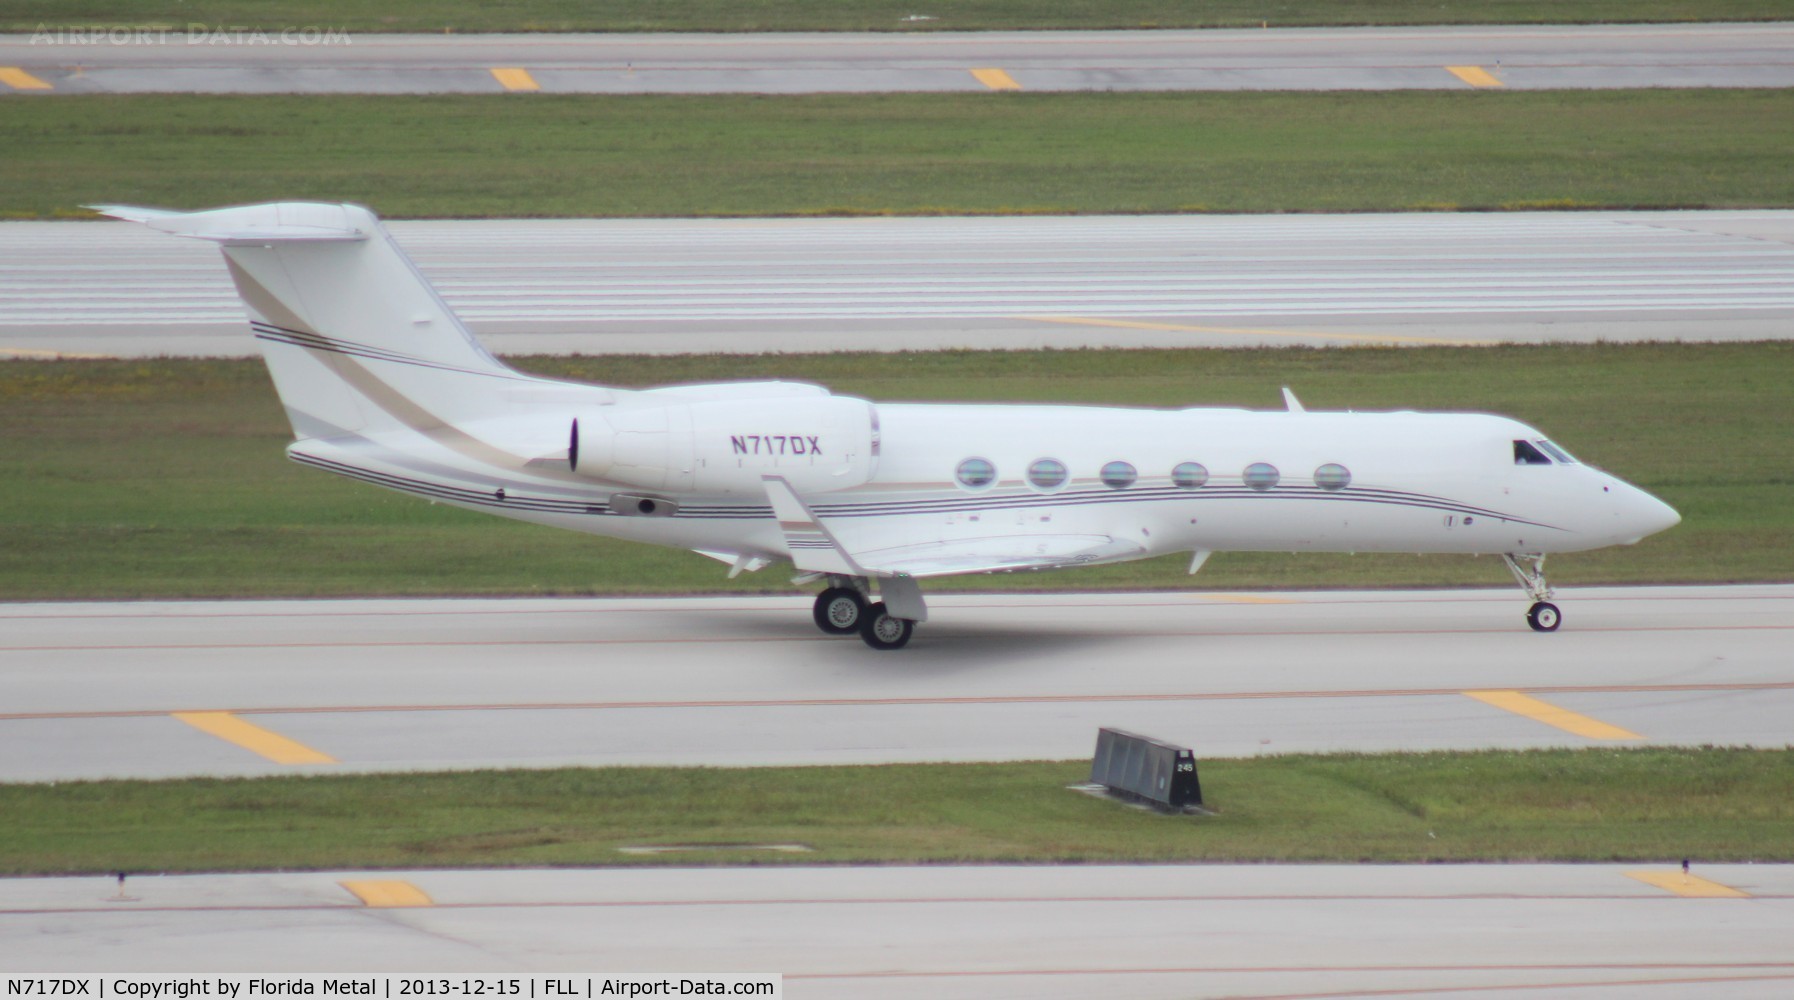 N717DX, 2007 Gulfstream Aerospace GIV-X C/N 4107, Gulfstream 450